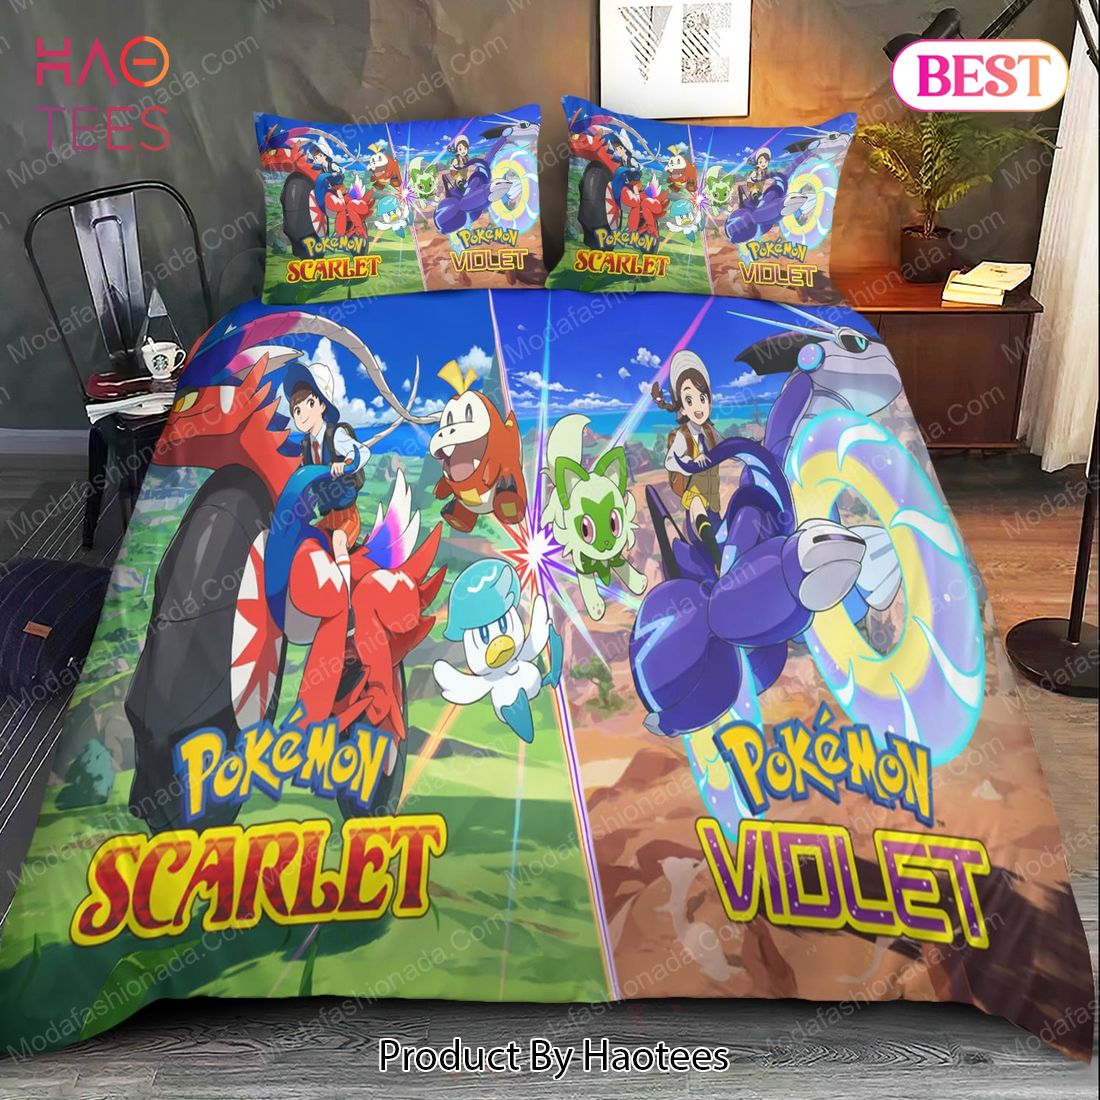 THE BEST Pokemon Scarlet and Violet Bedding Sets Bed Sets, Bedroom Sets, Comforter Sets, Duvet Cover, Bedspread